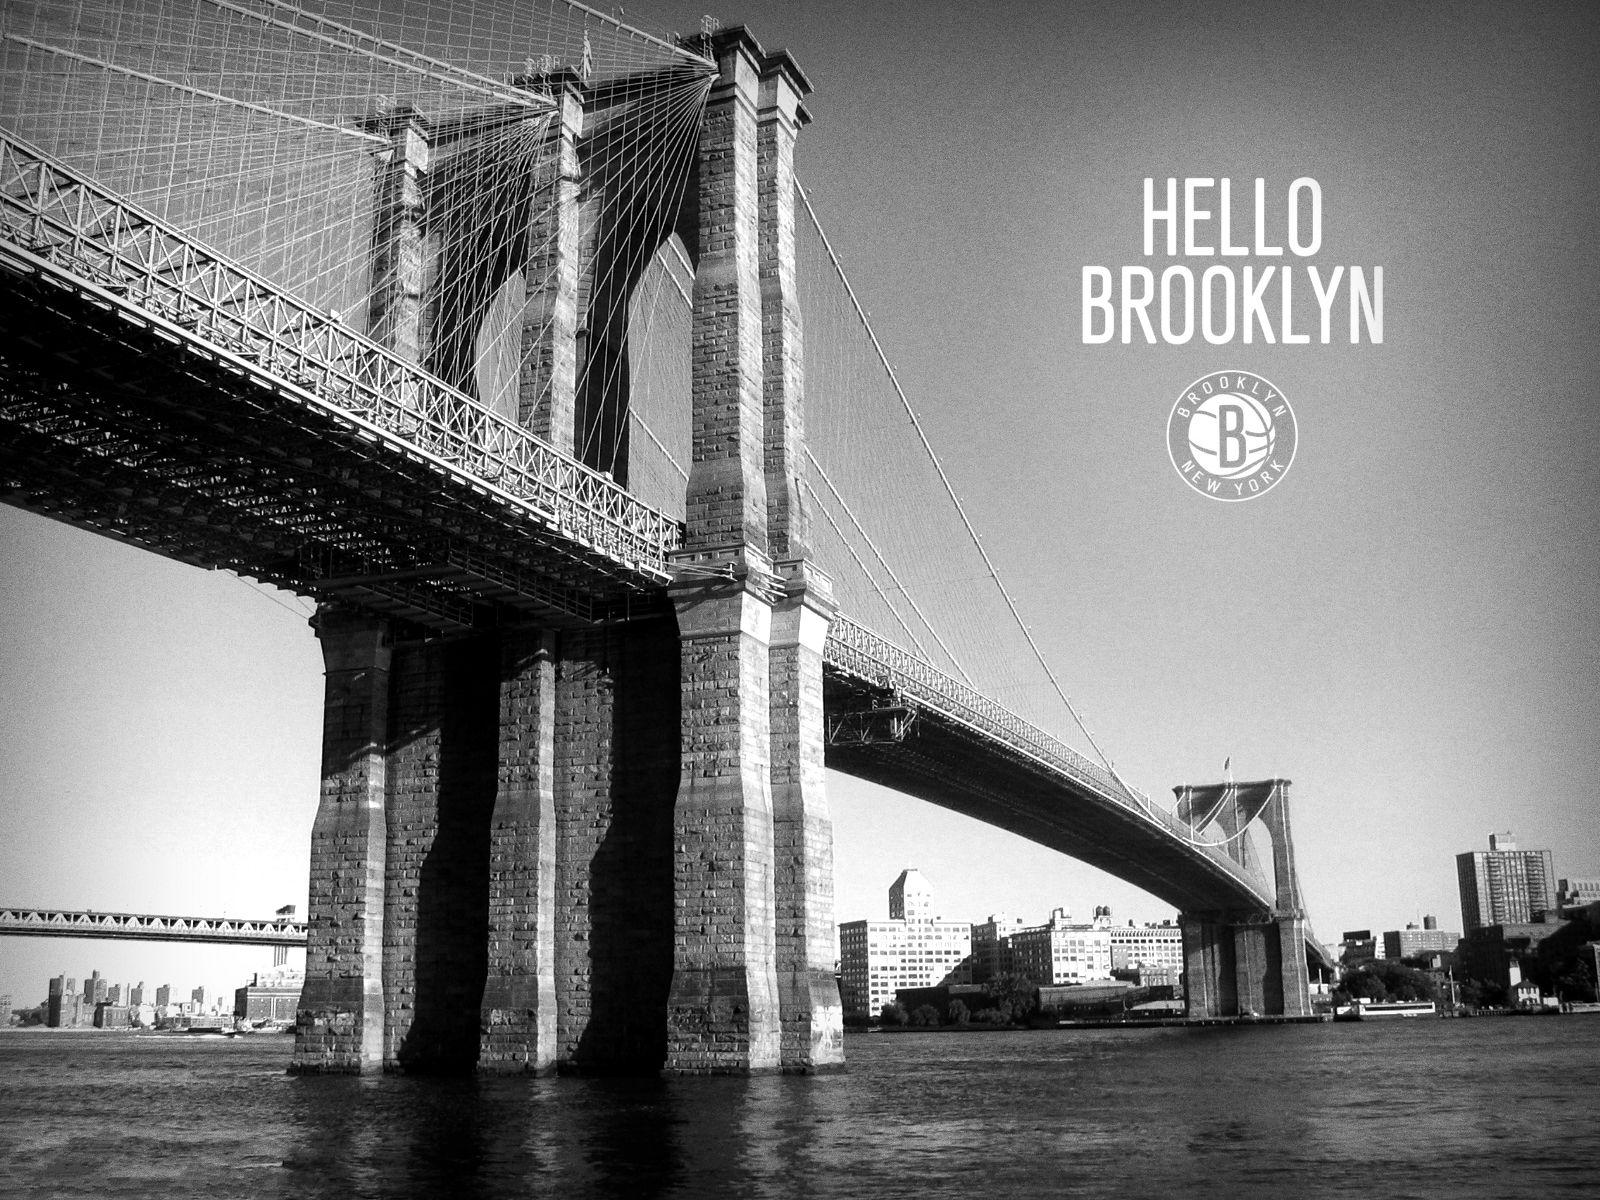 Wallpapers Brooklyn Nets  NBA ID